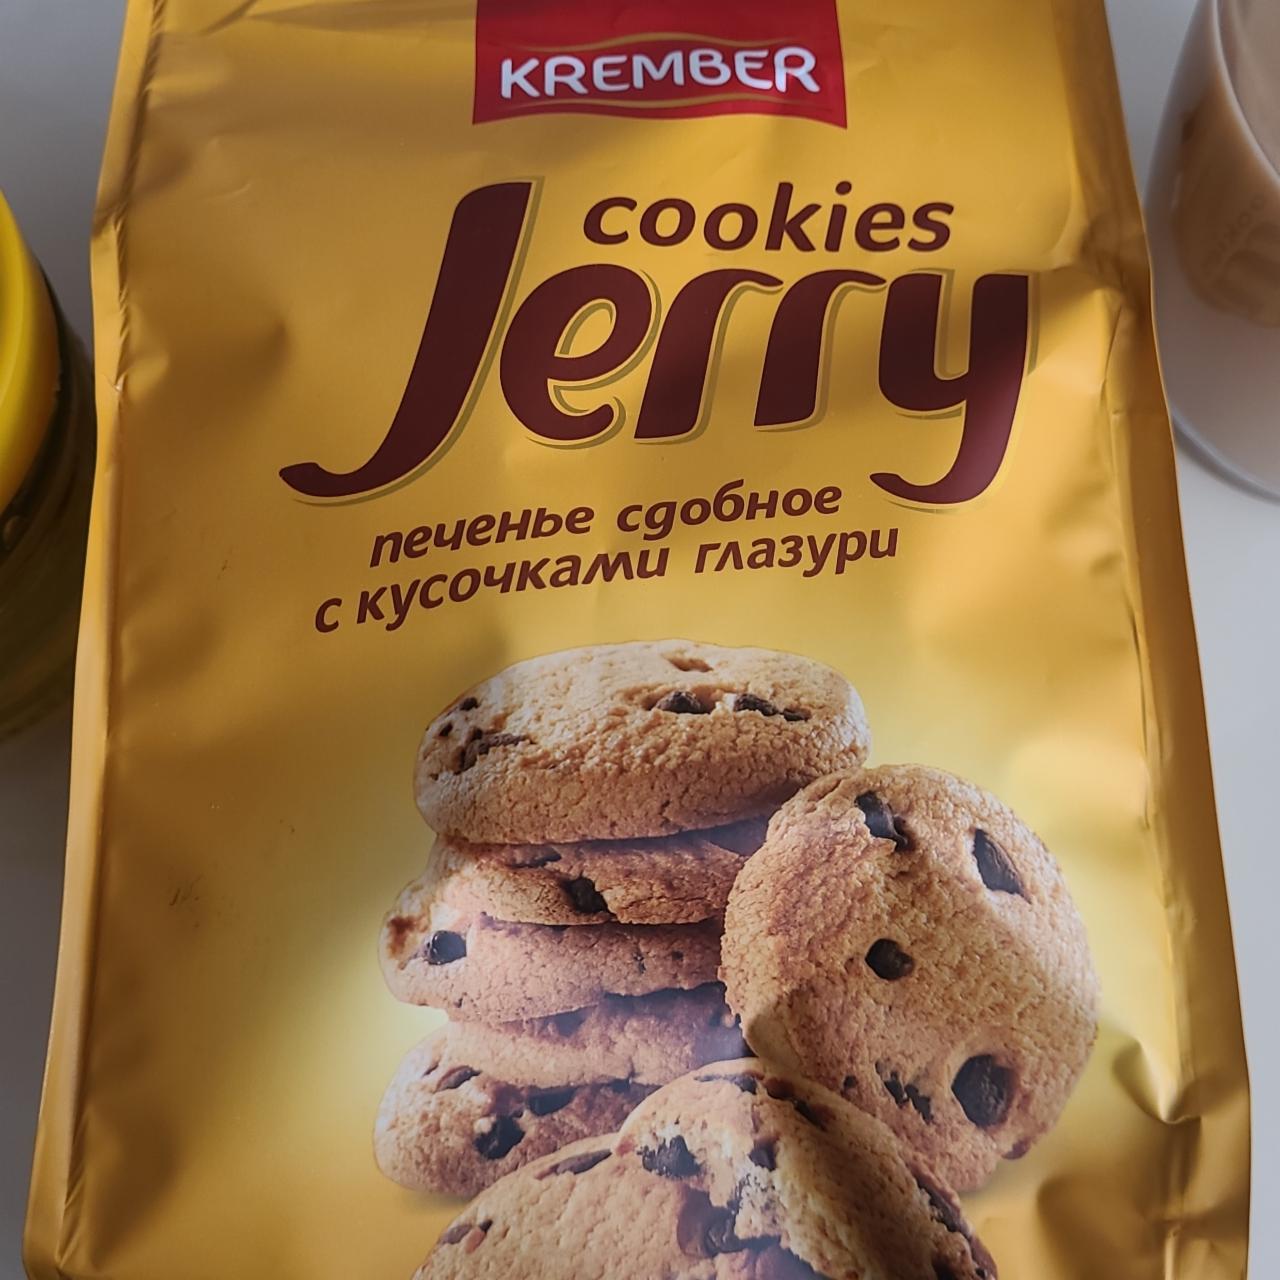 Фото - печенье Cookies jerry с кусочками глазури Krember